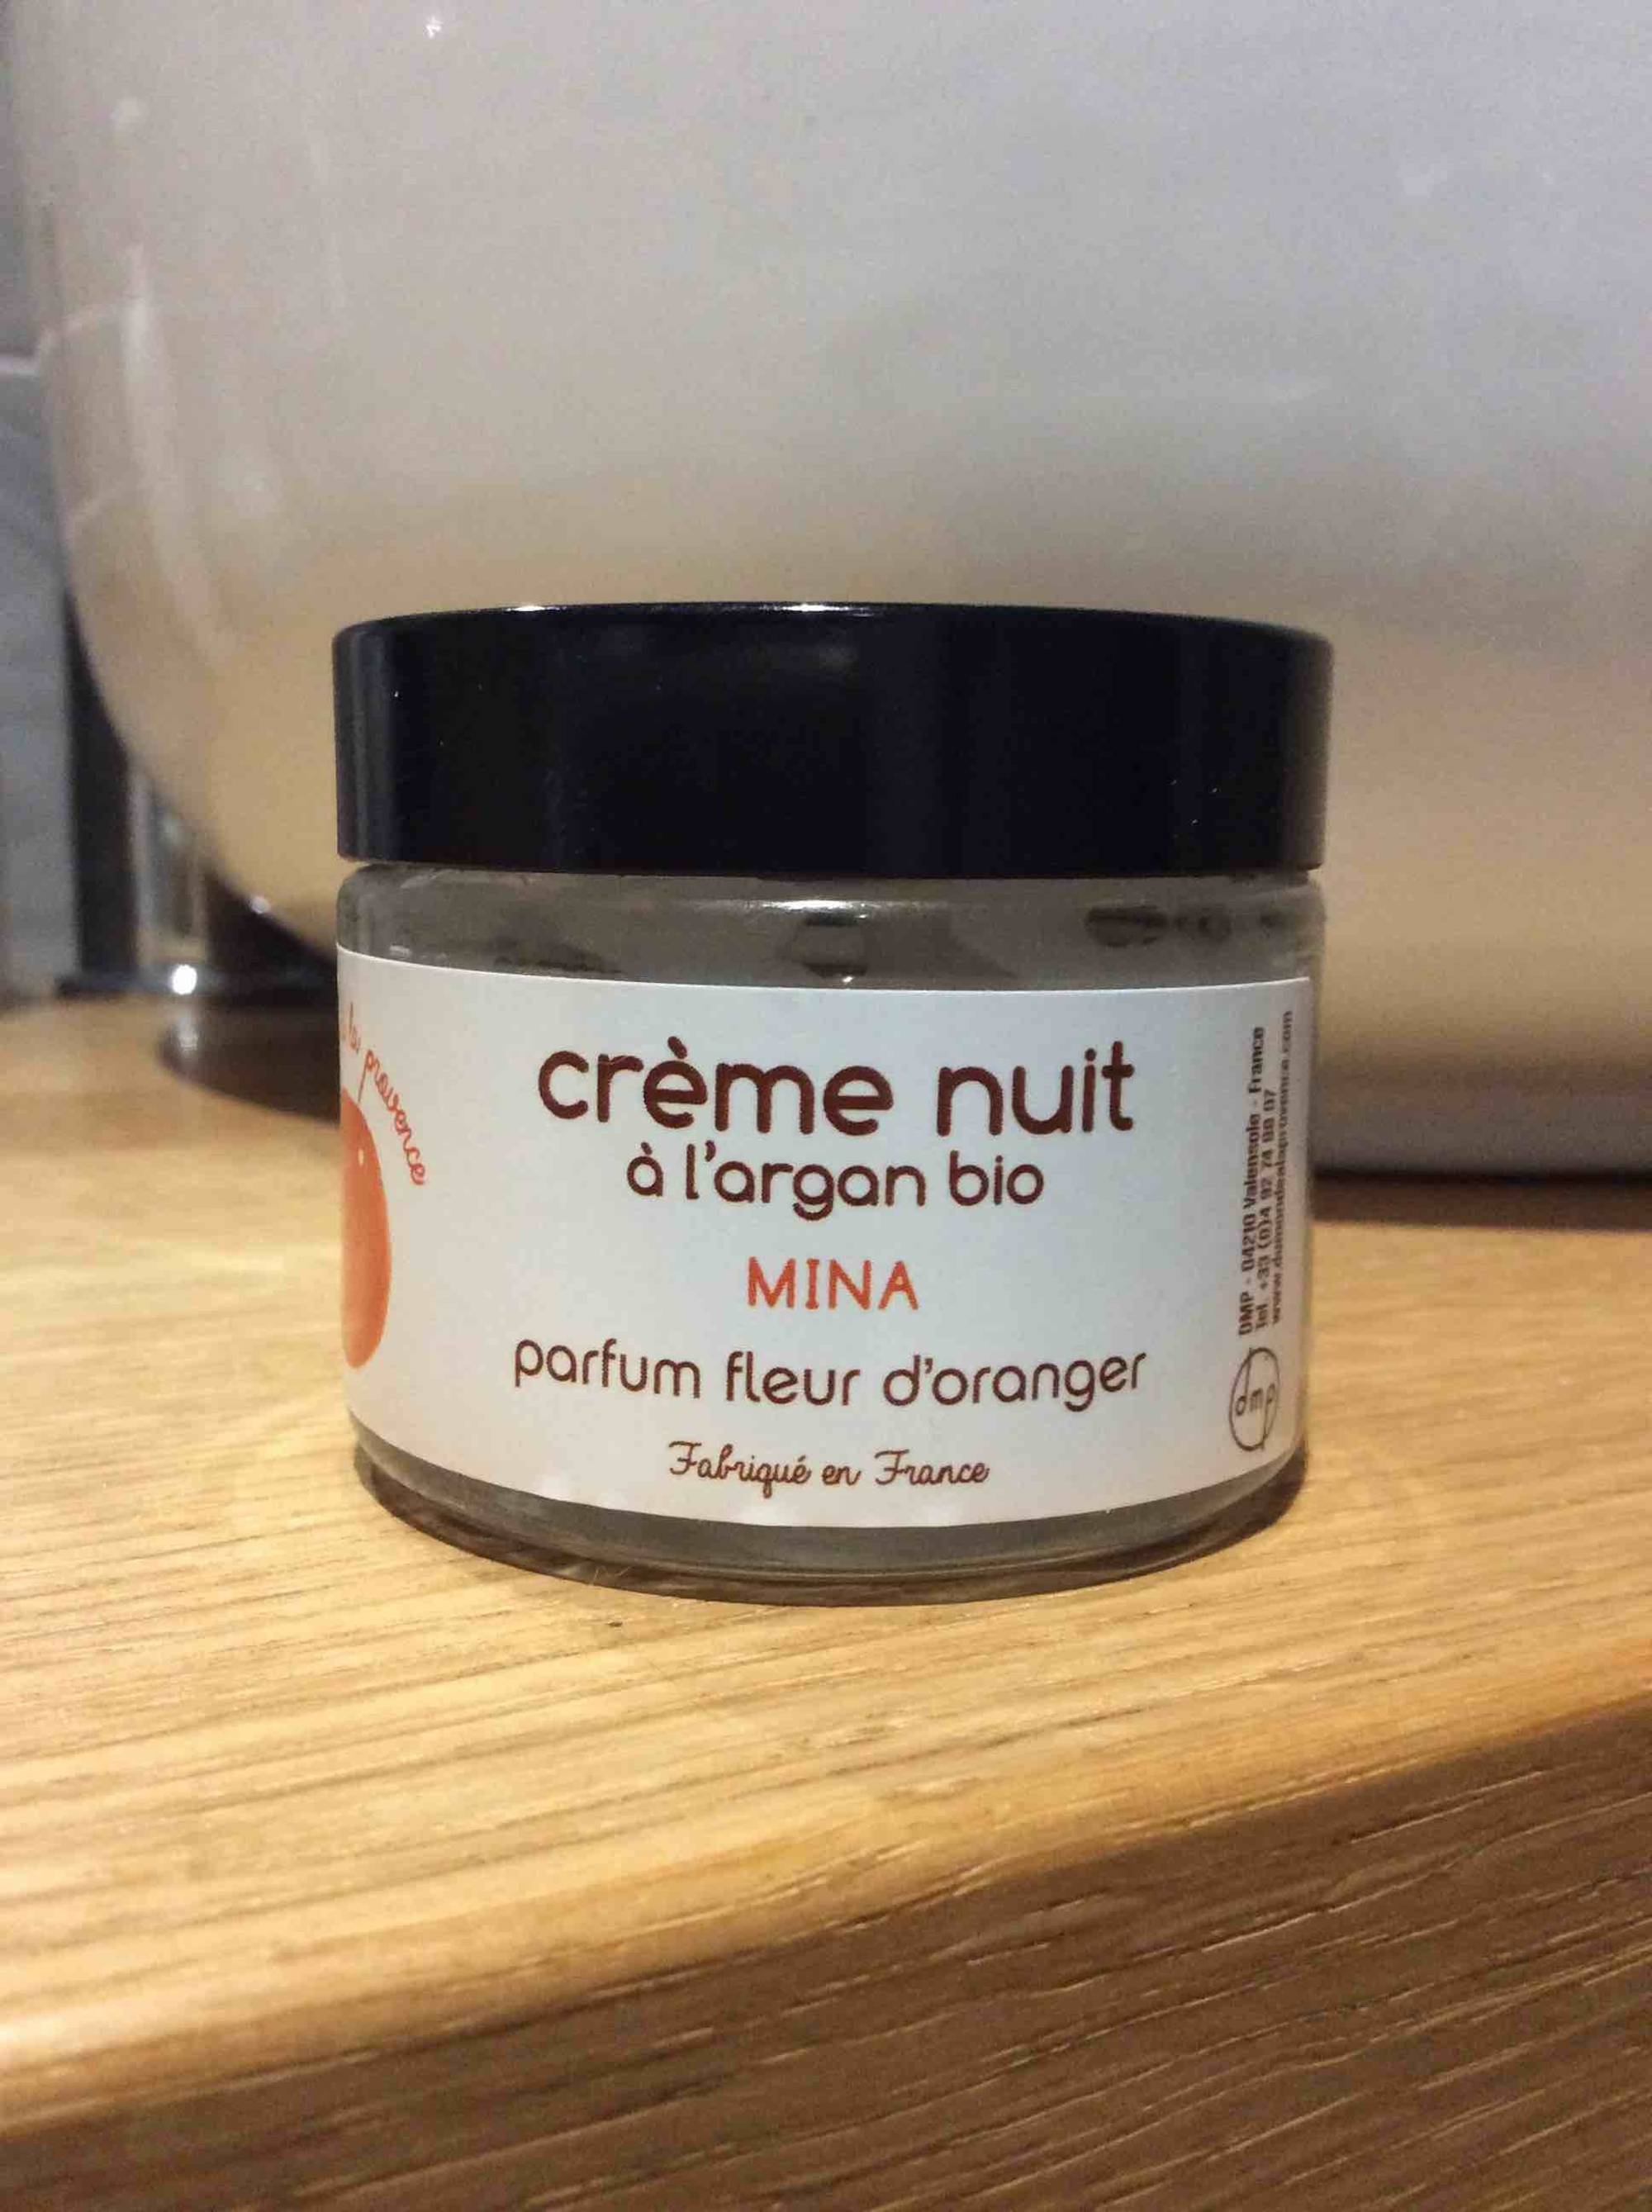 MINA - Crème nuit à l'argan bio parfum fleur d'oranger